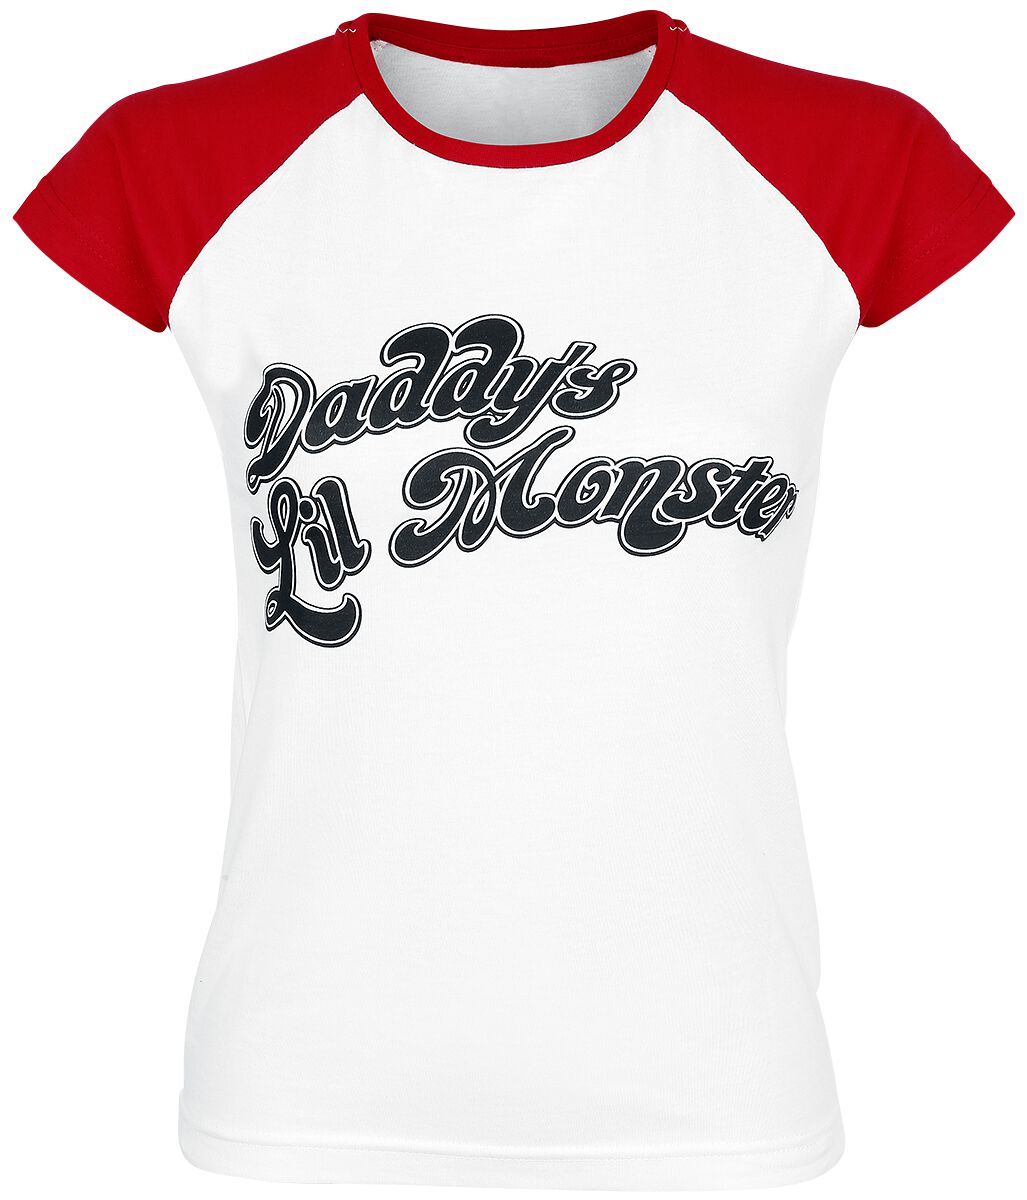 Suicide Squad - DC Comics T-Shirt - Daddy`s Lil` Monster - S bis XXL - für Damen - Größe XXL - weiß/rot  - EMP exklusives Merchandise!